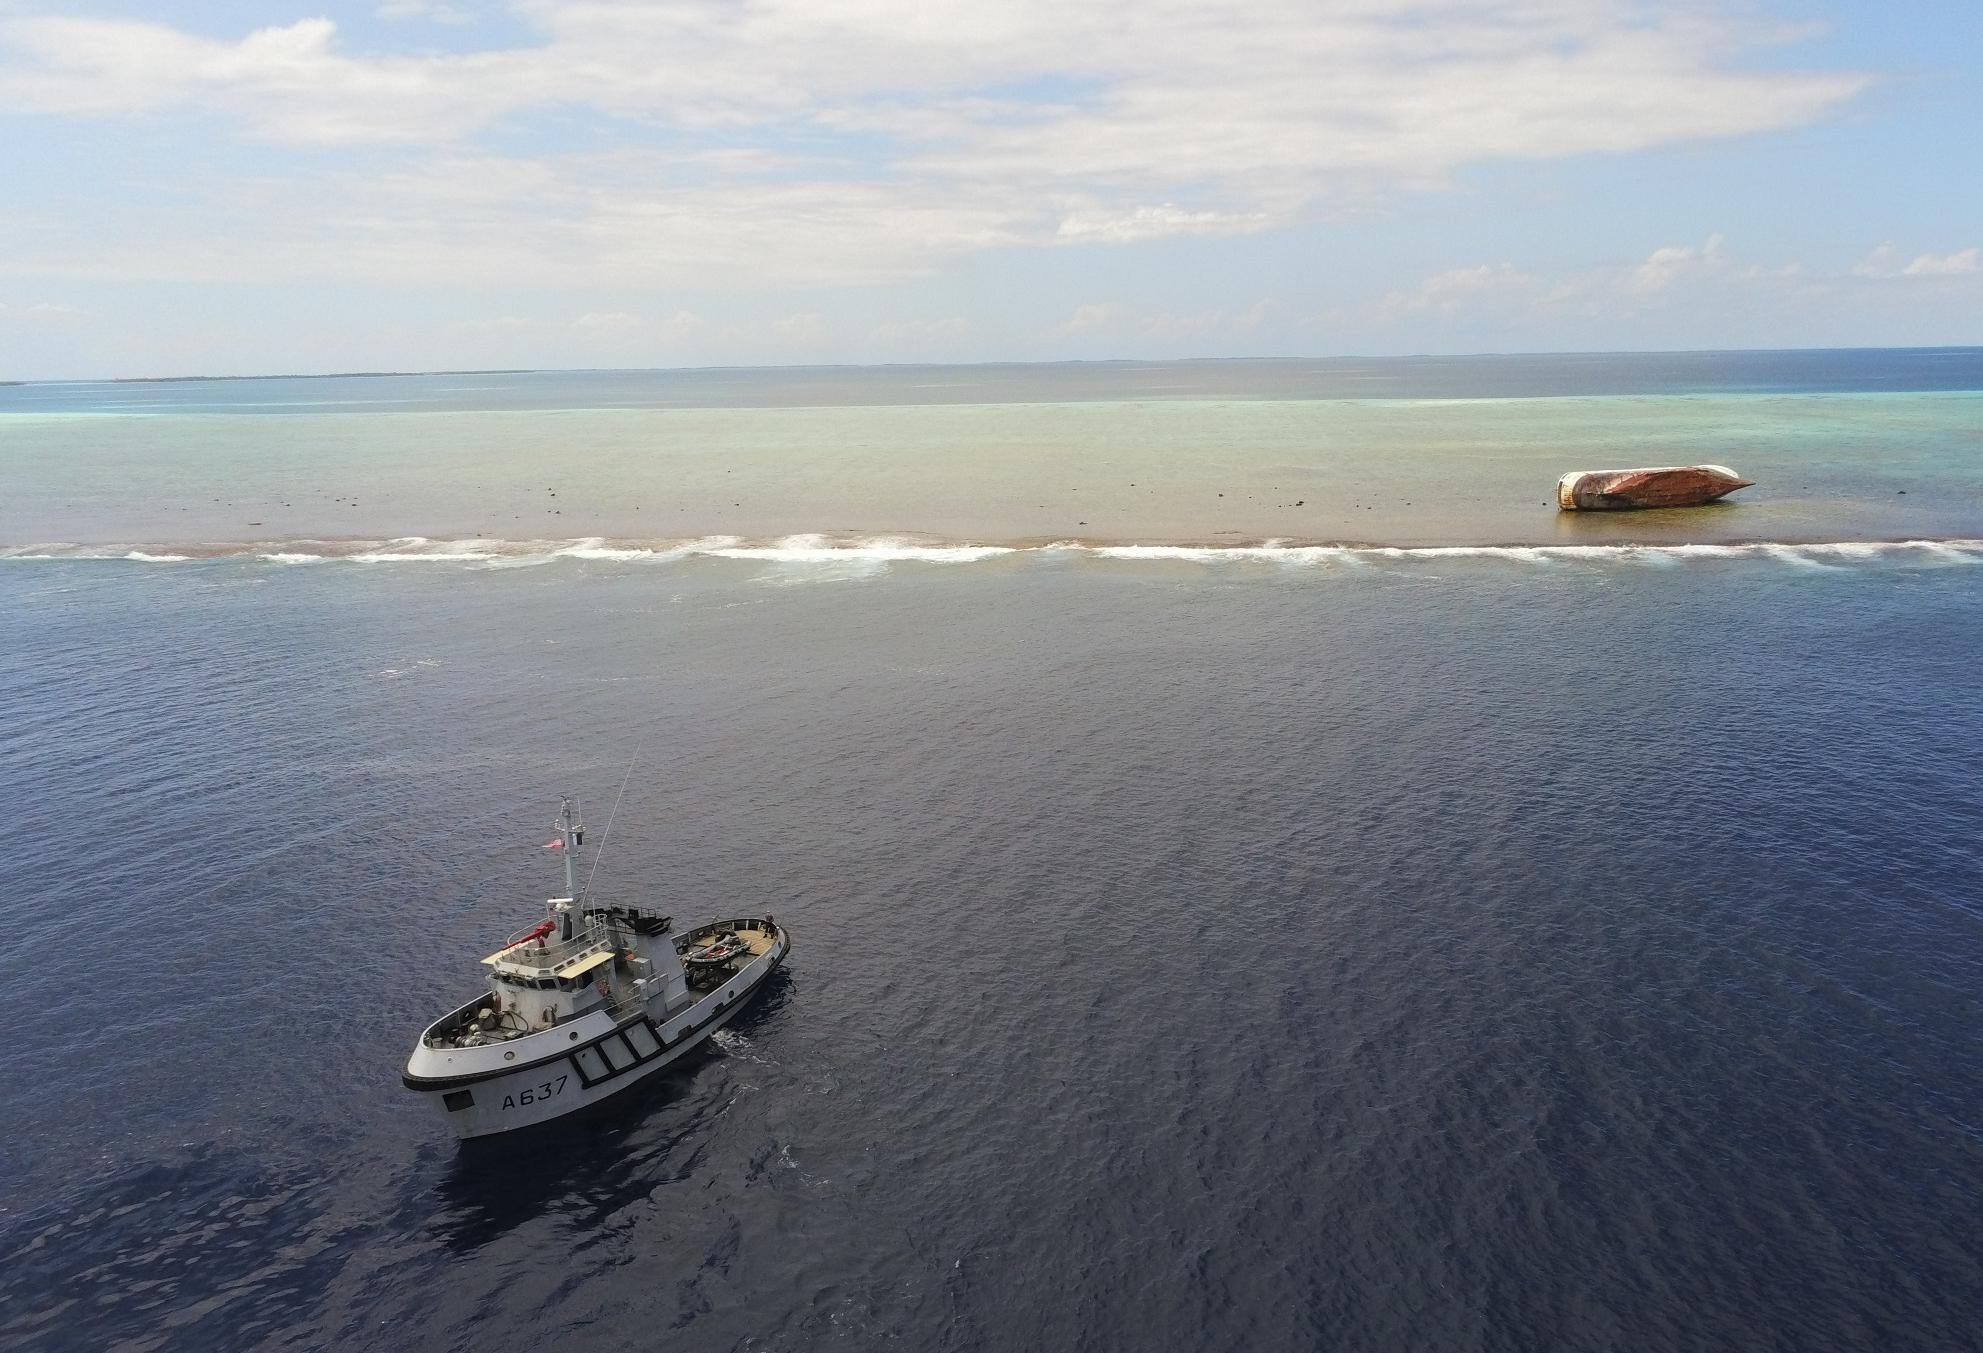 Le Maroa en mission de surveillance aux Tuamotu